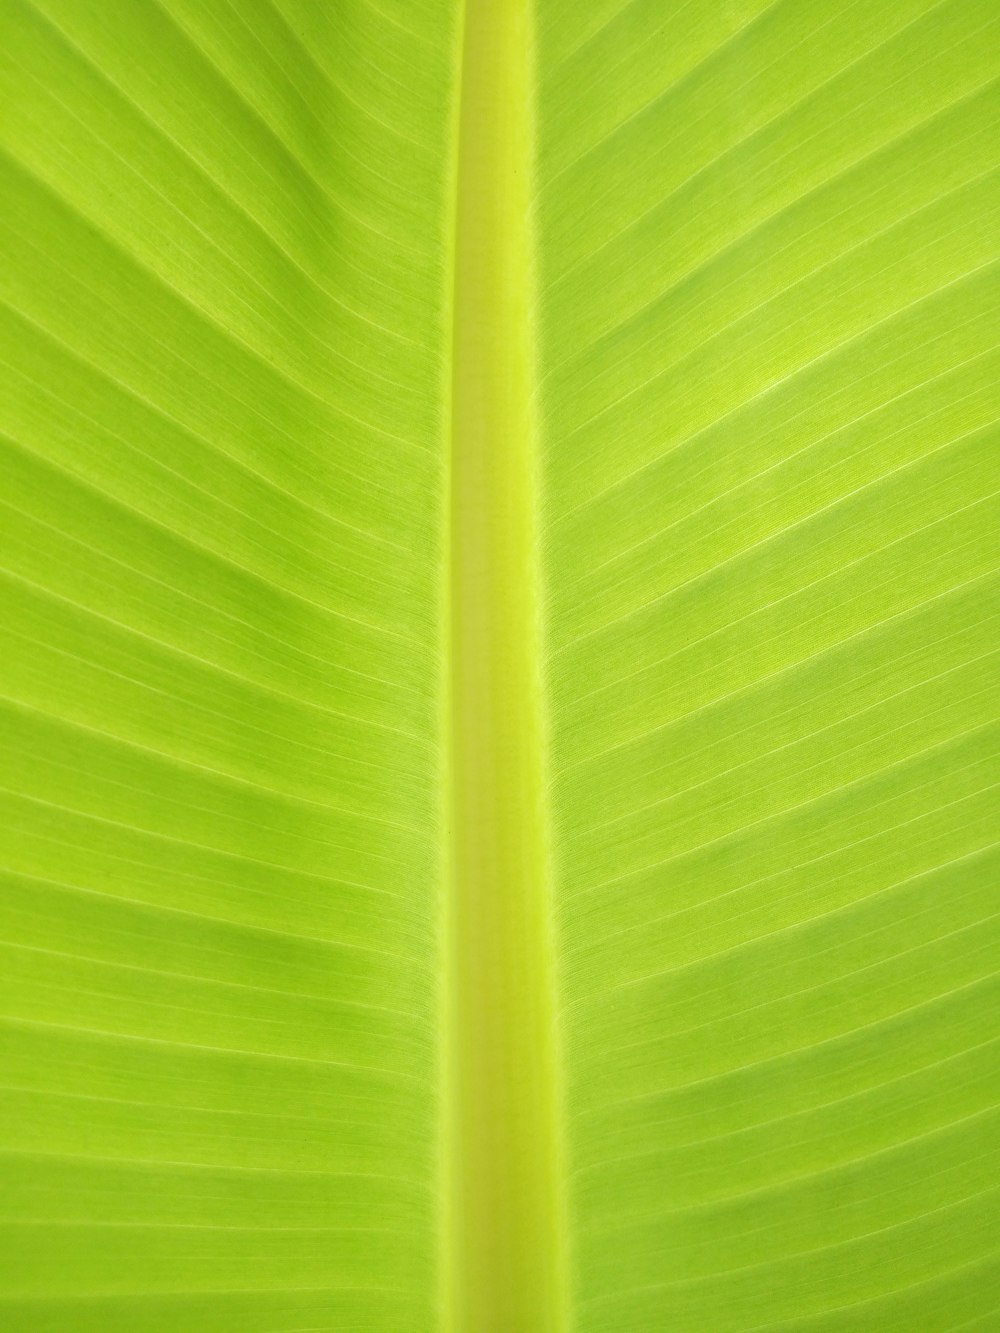 textil verde en la fotografía de primer plano